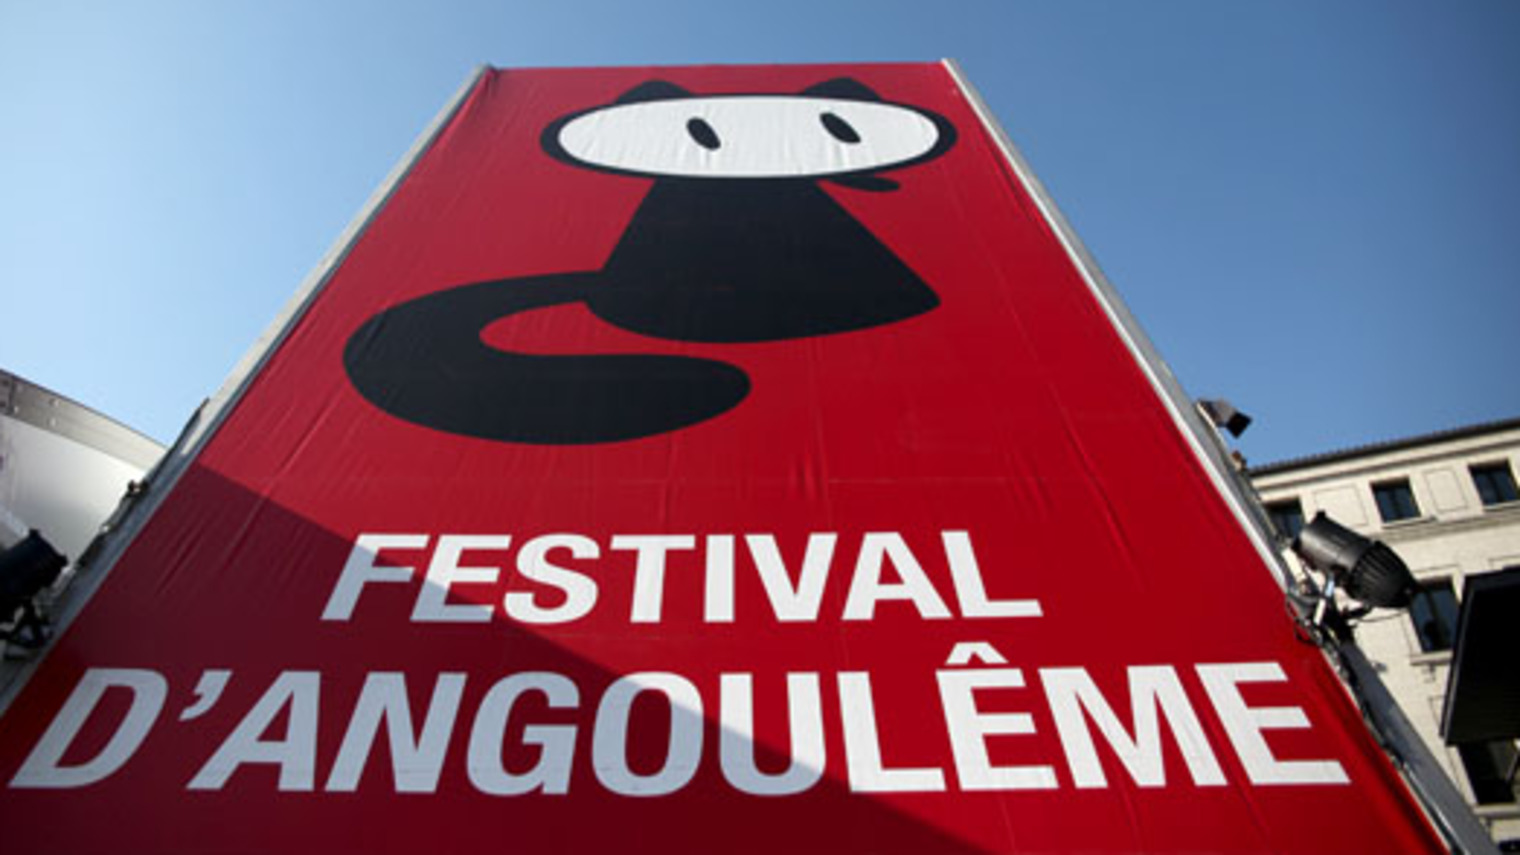 Festival angouleme